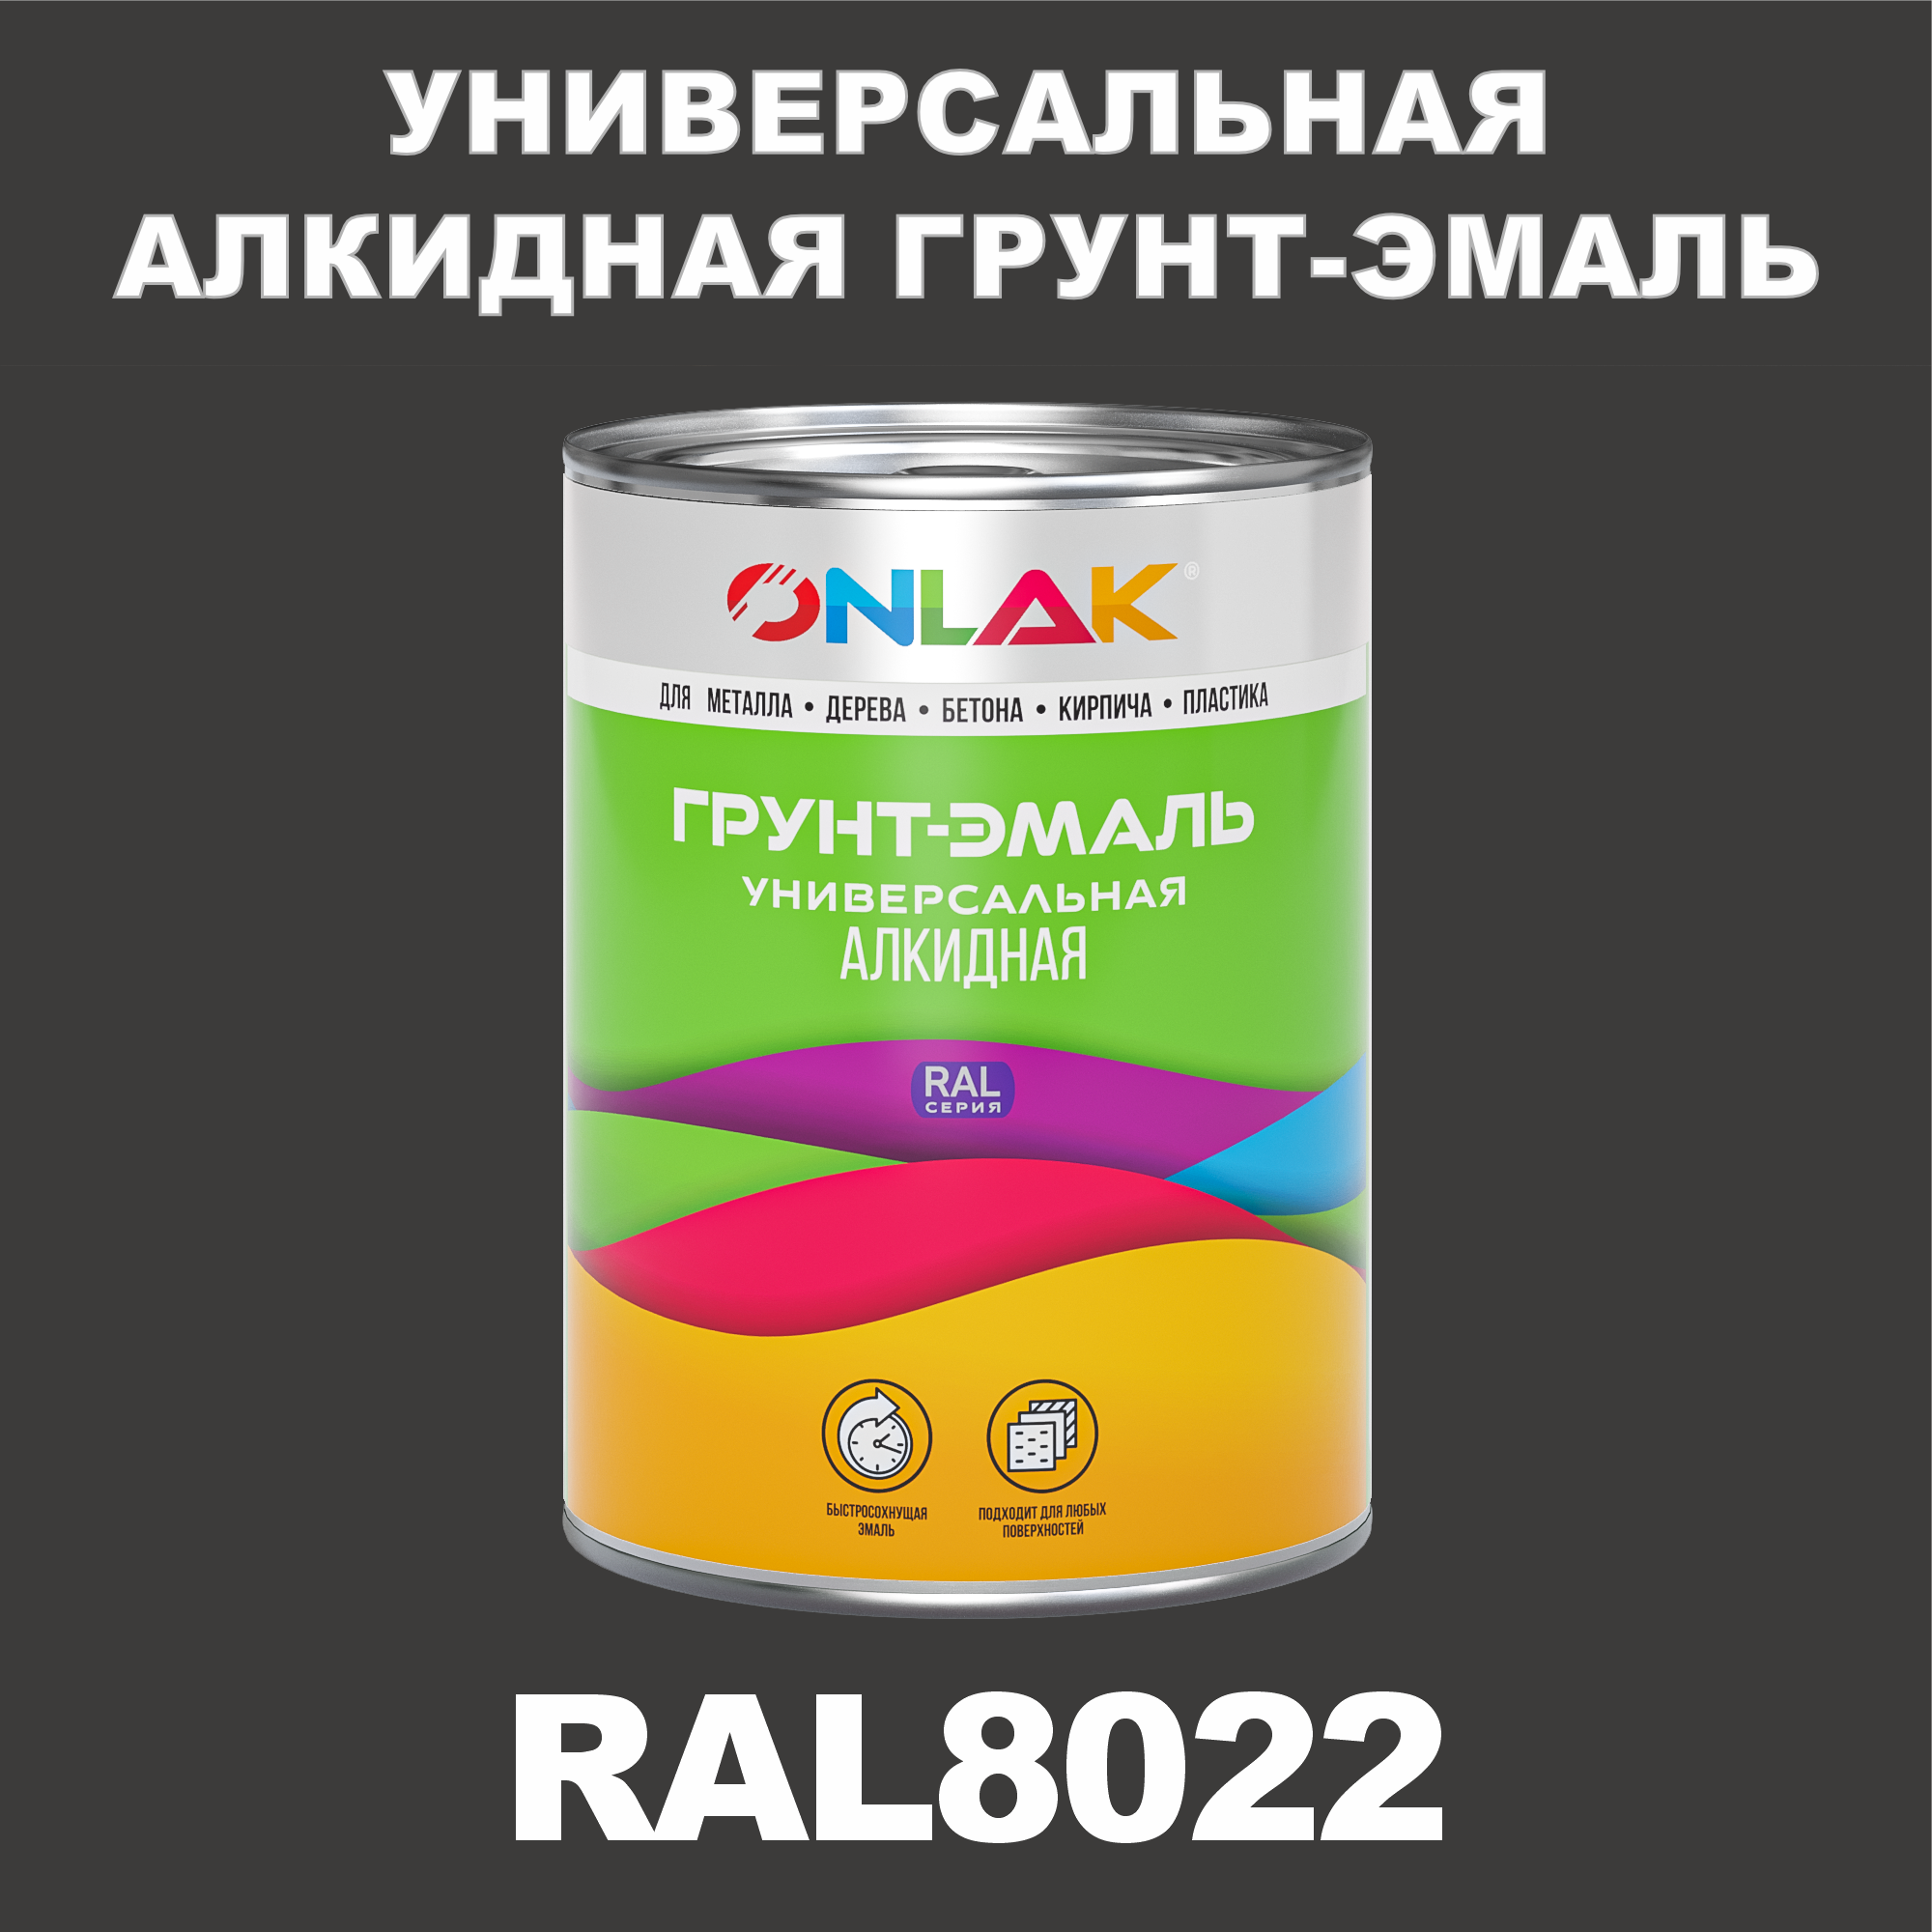 Грунт-эмаль ONLAK 1К RAL8022 антикоррозионная алкидная по металлу по ржавчине 1 кг грунт эмаль yollo по ржавчине алкидная зеленая 0 9 кг